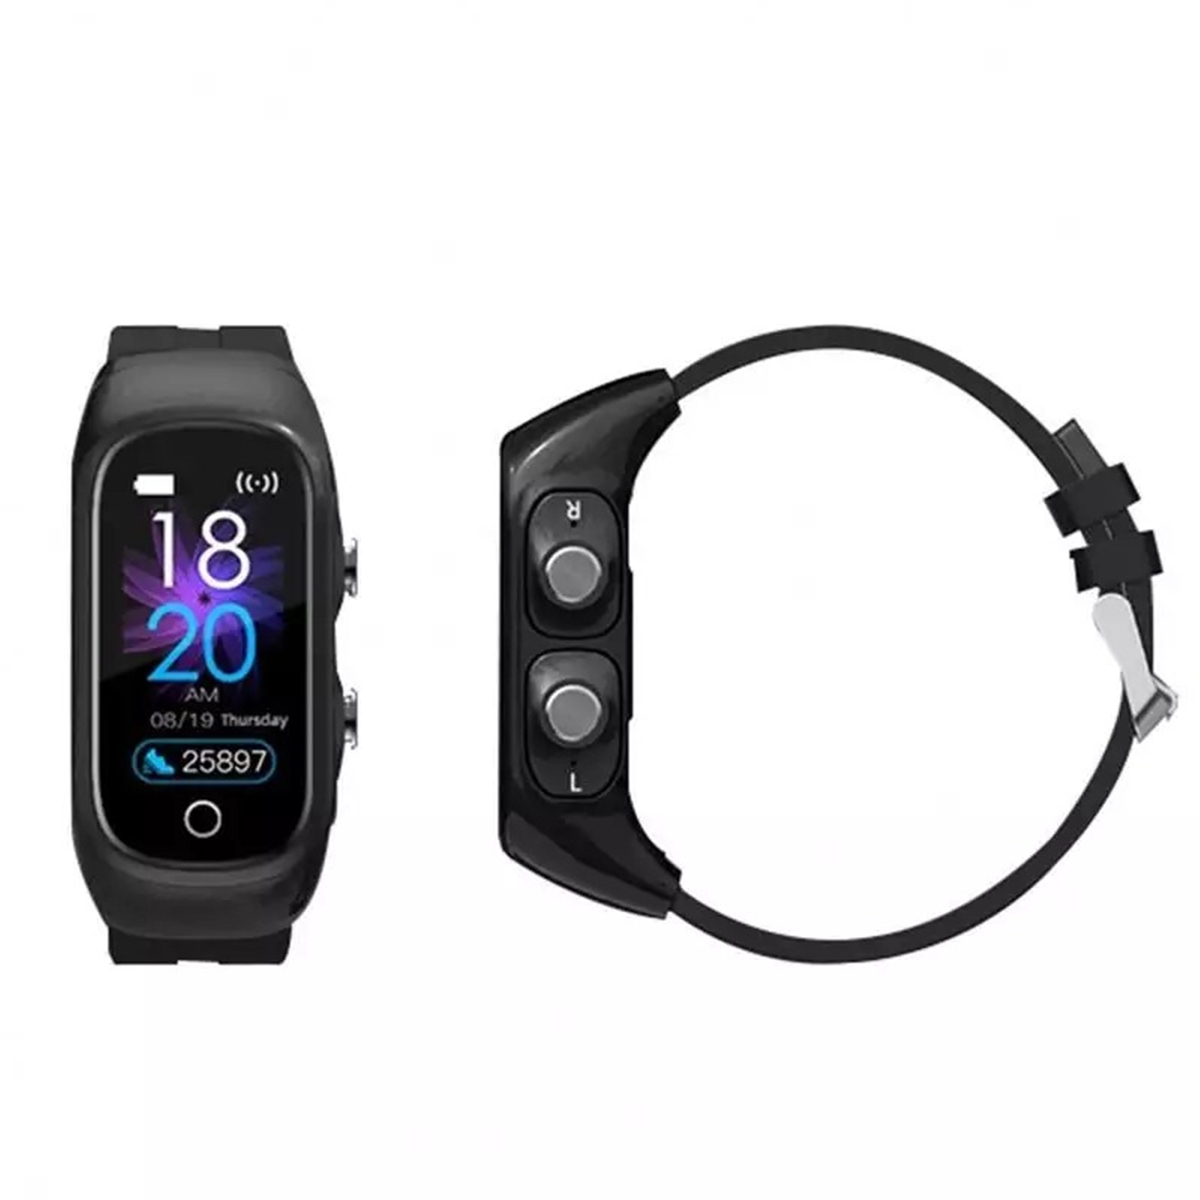 Fralugio Smart Watch Reloj Inteligente Banda Deportiva M1 con Audifonos Manos Libres Bluetooth 